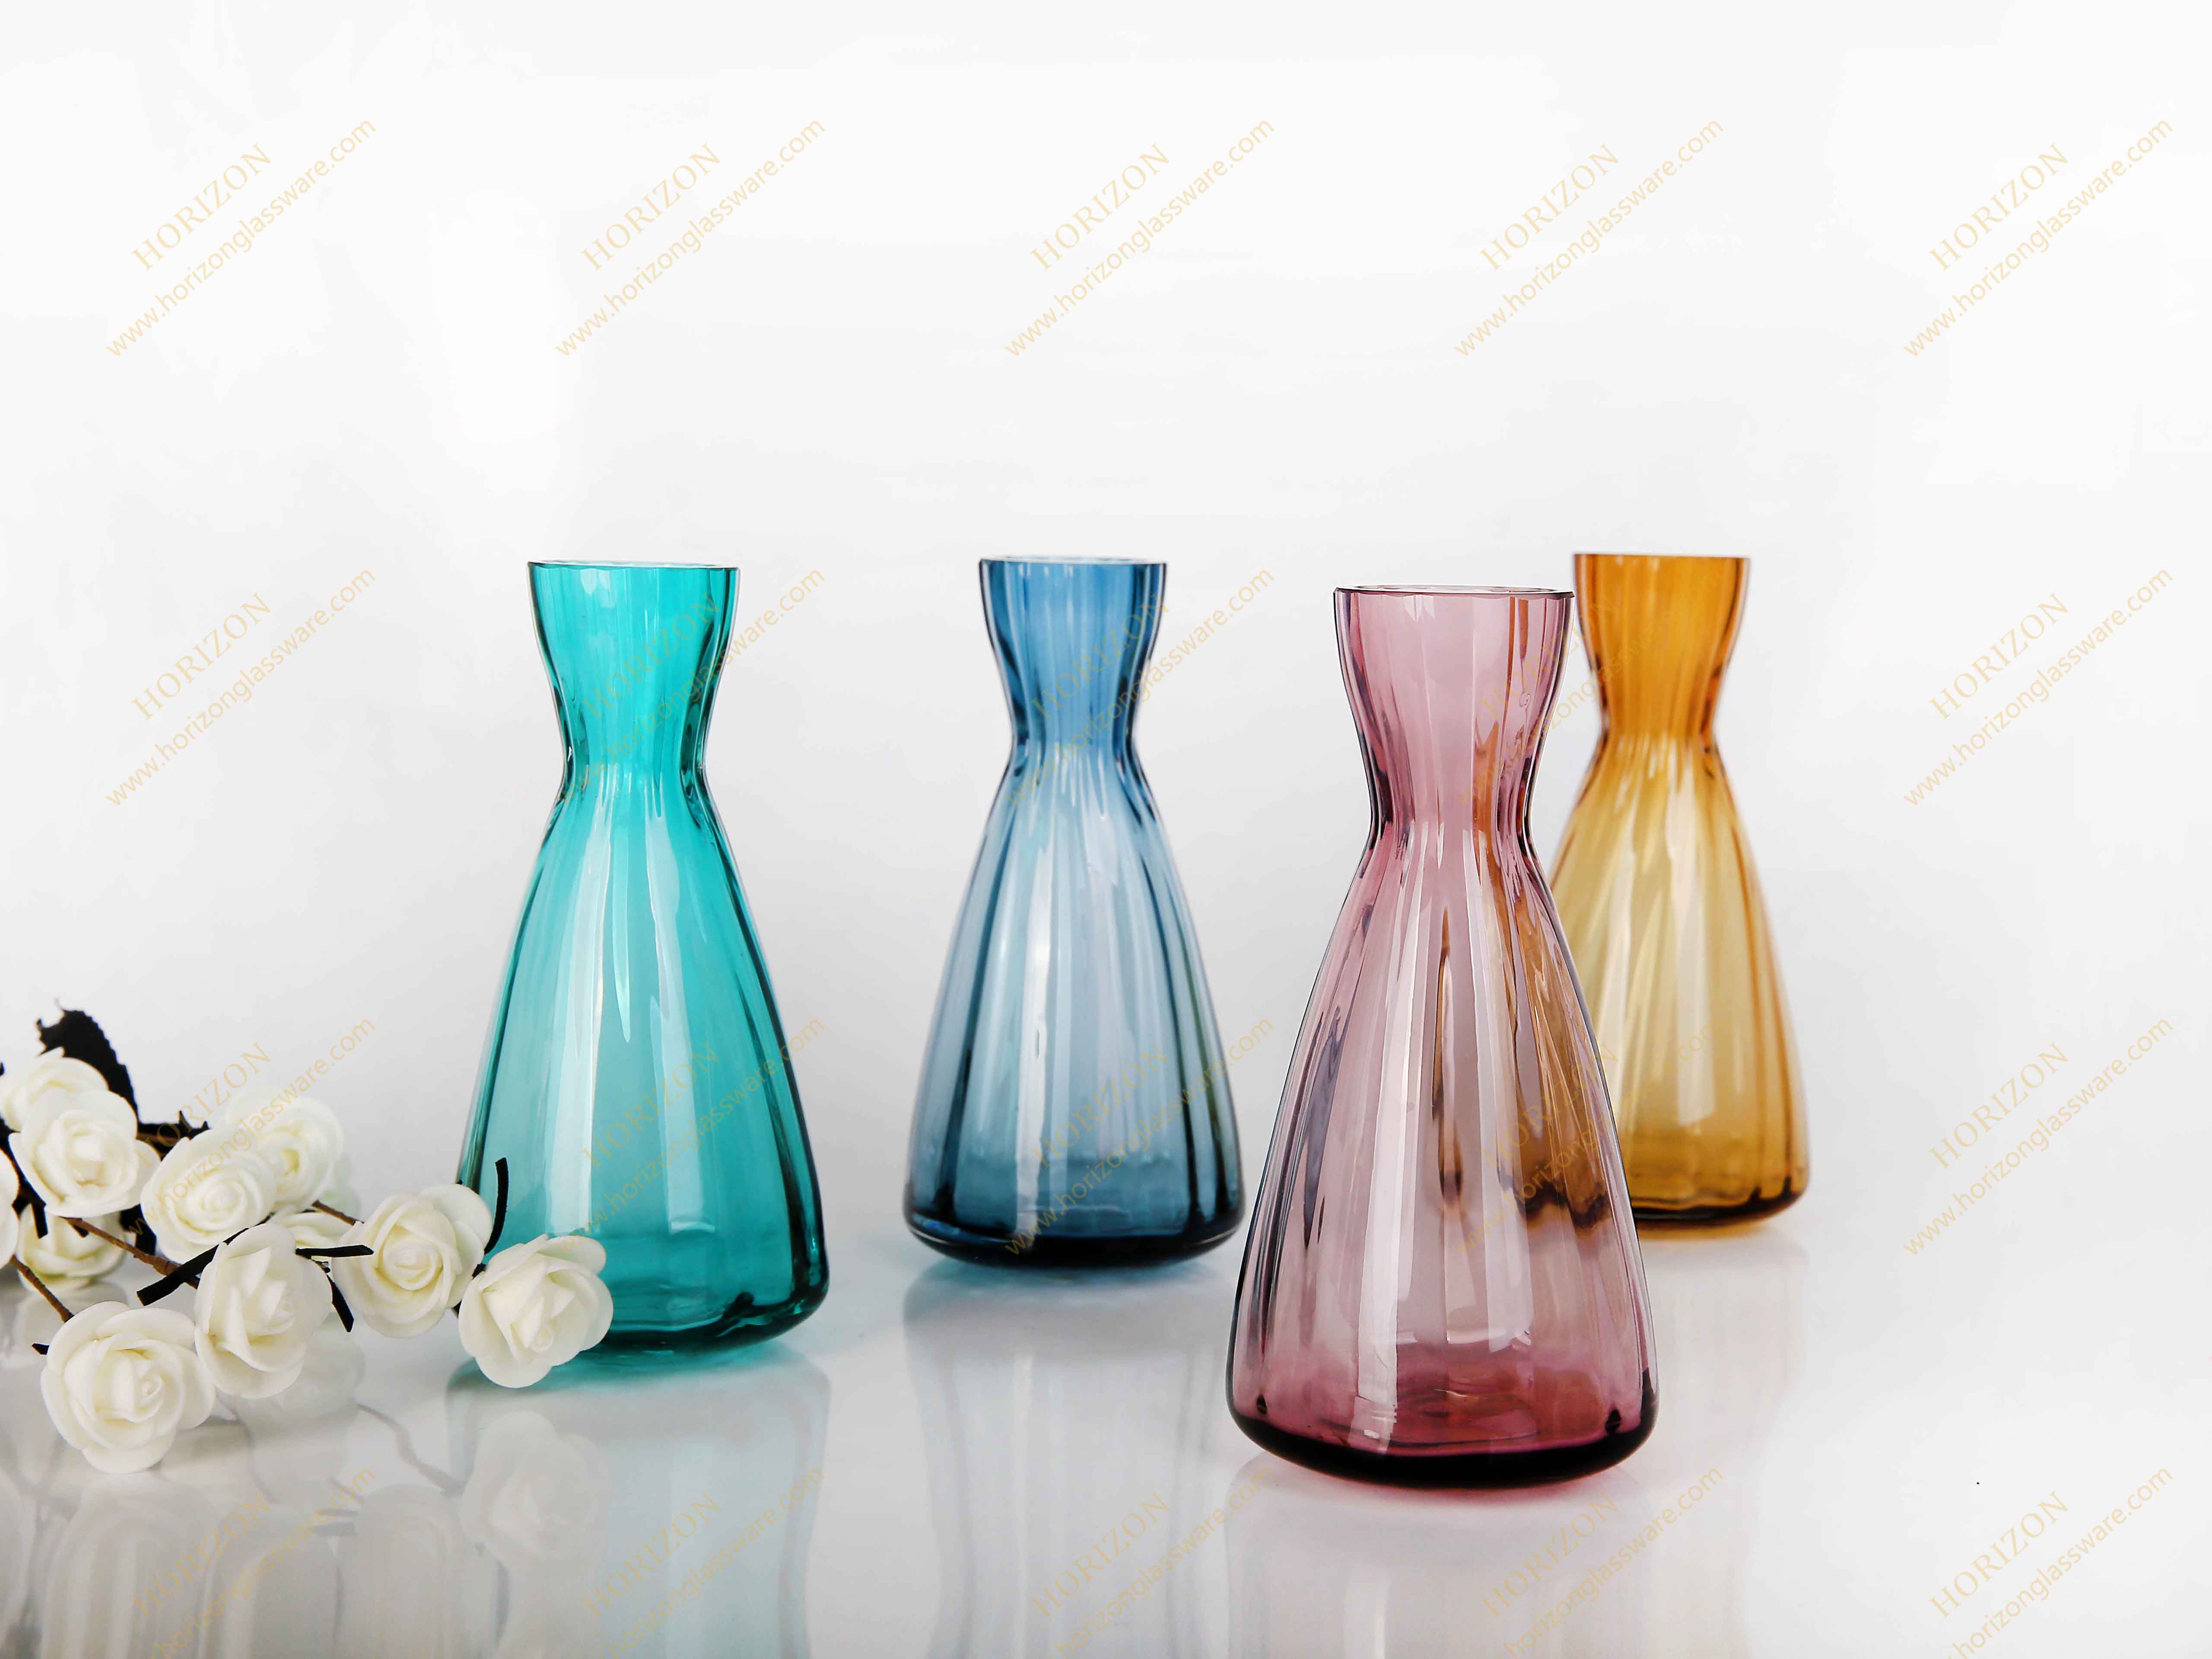 Vases2018-1525